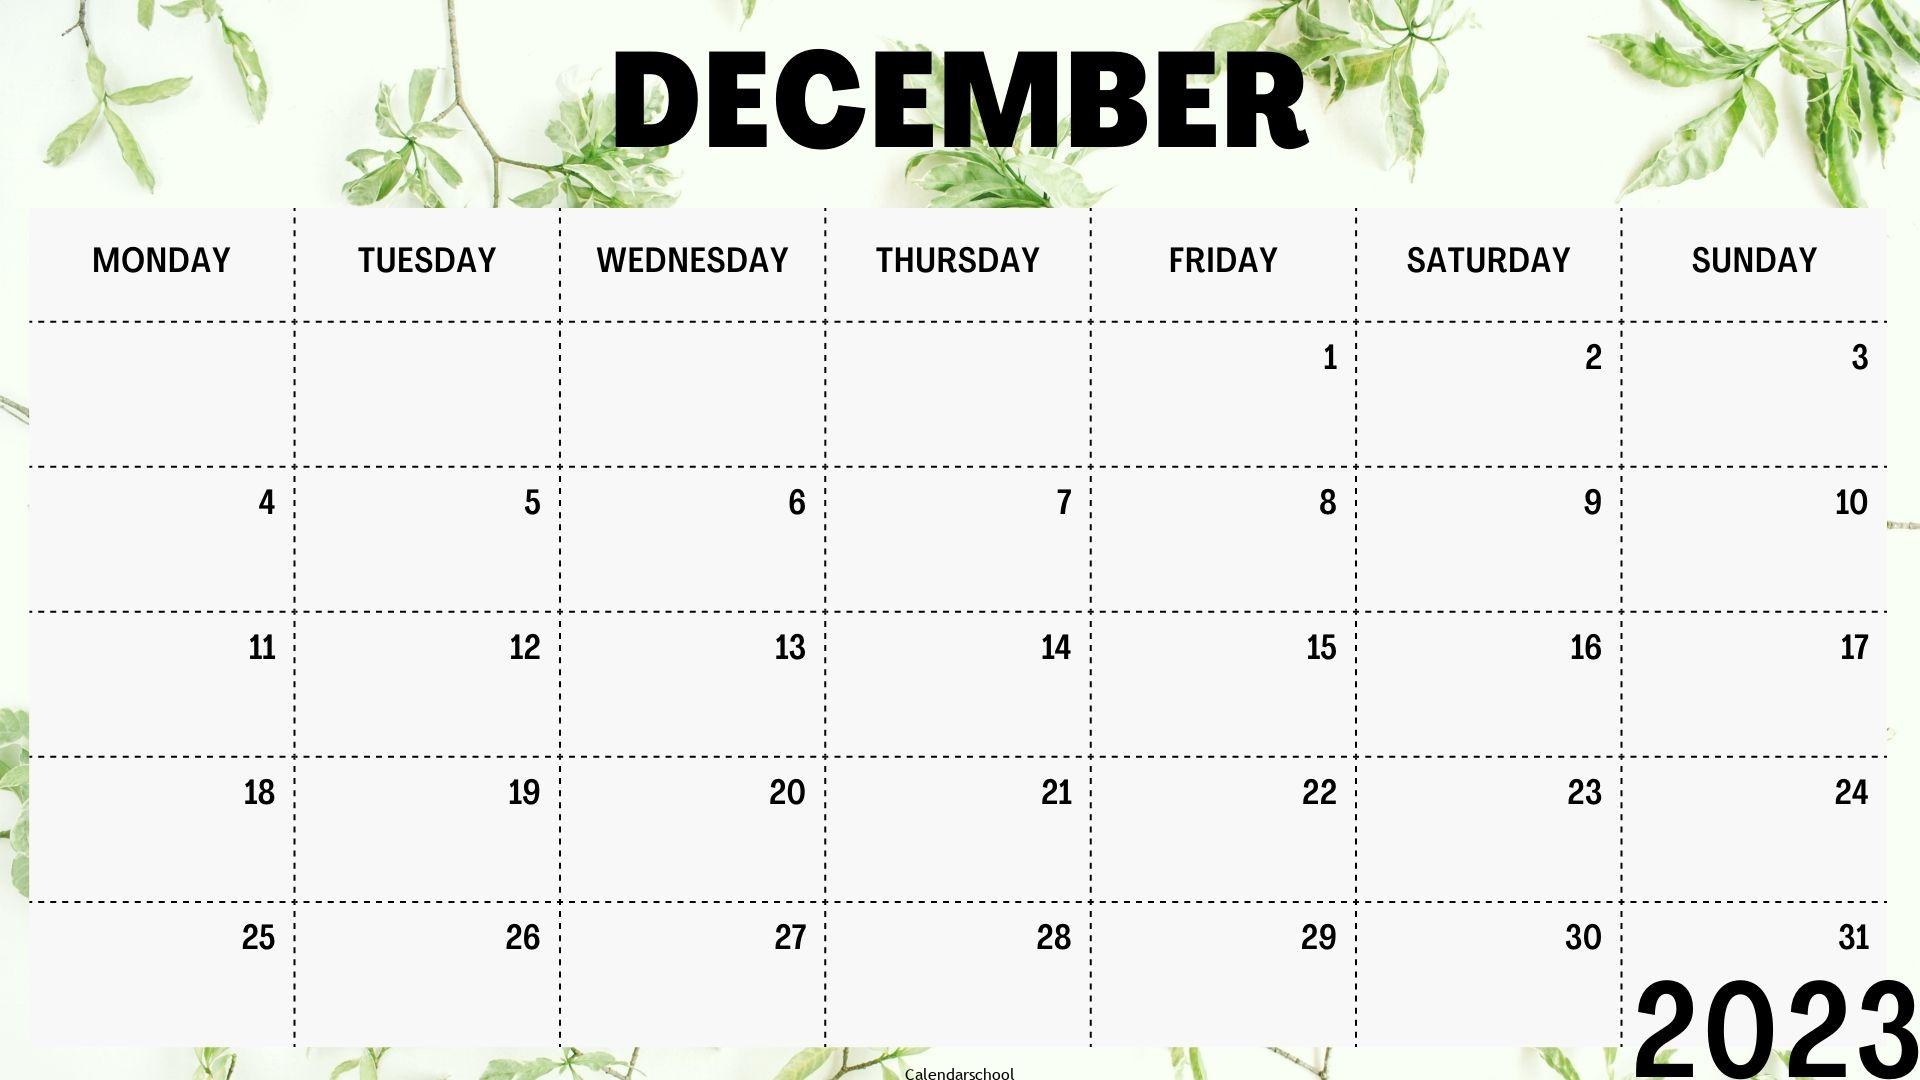 December 2023 Monthly Calendar Template